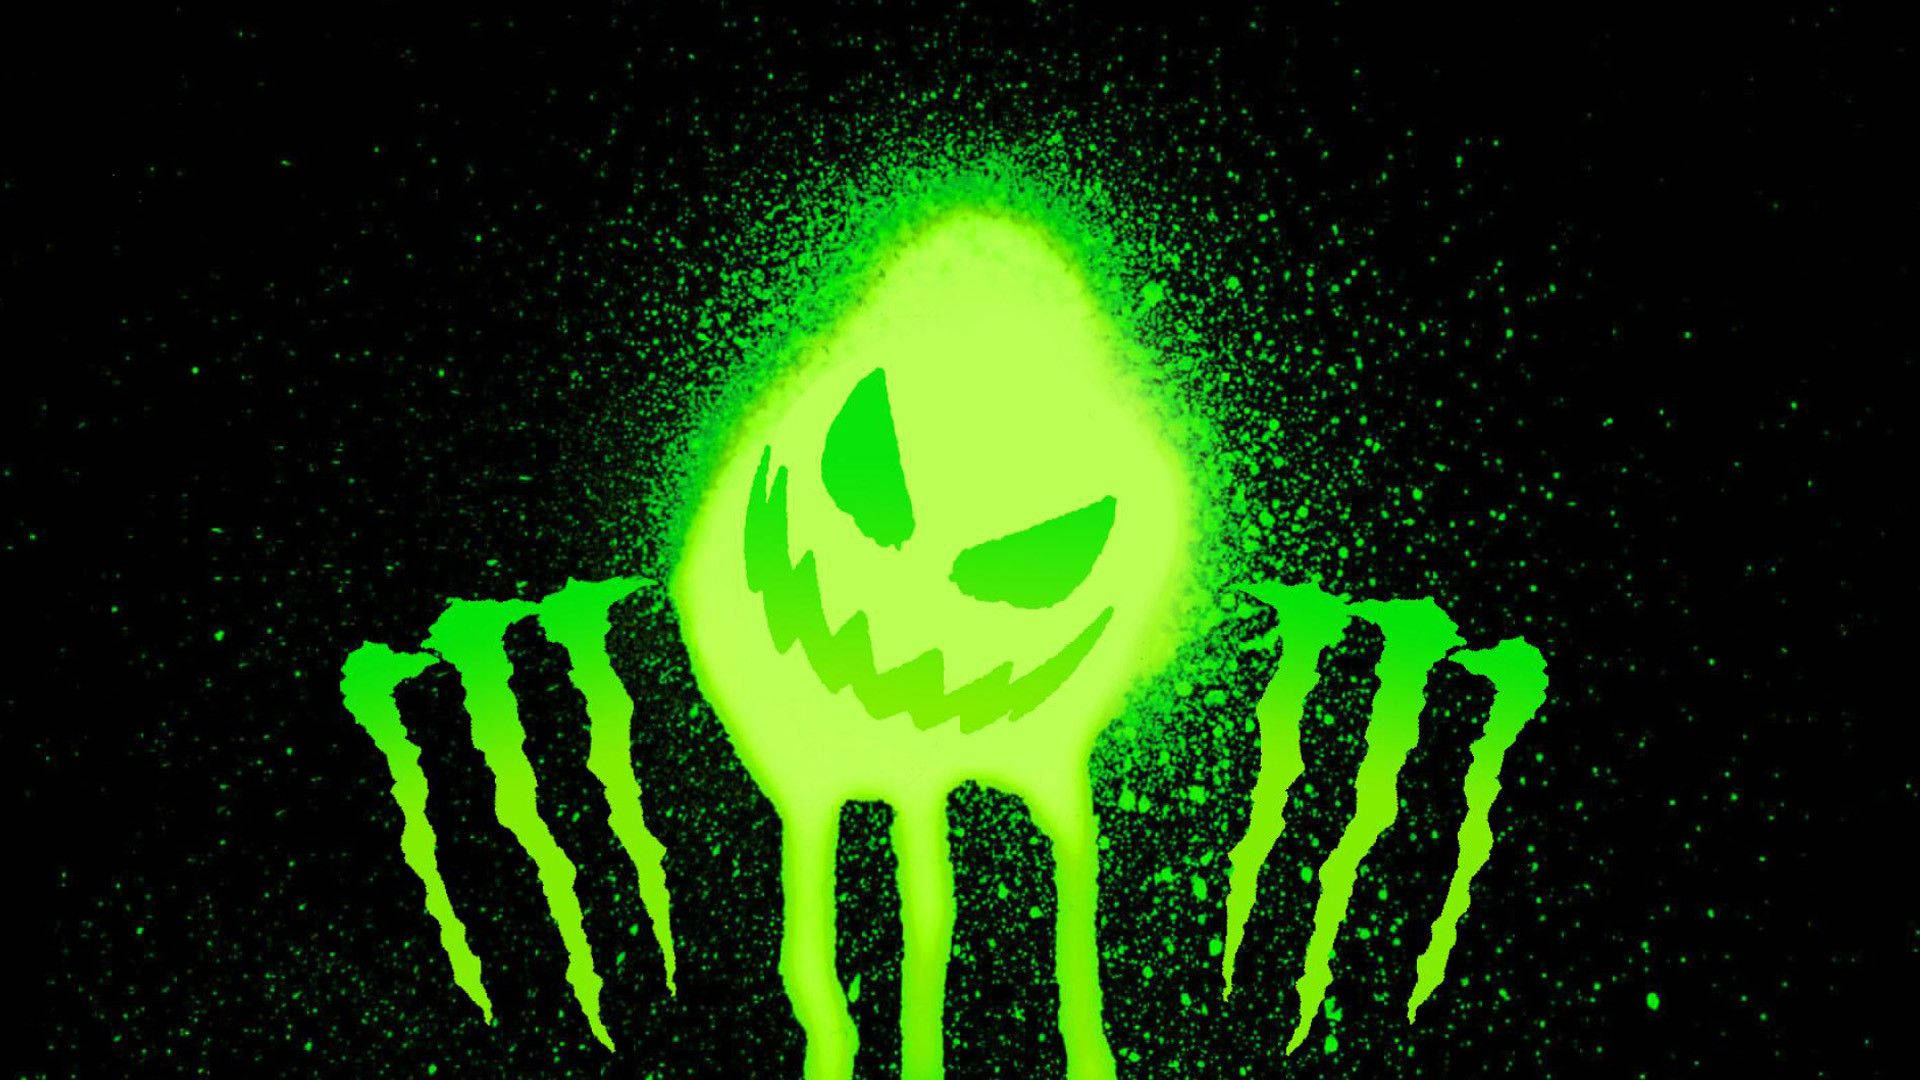 Caption: Vibrant Green Monster Logo Wallpaper